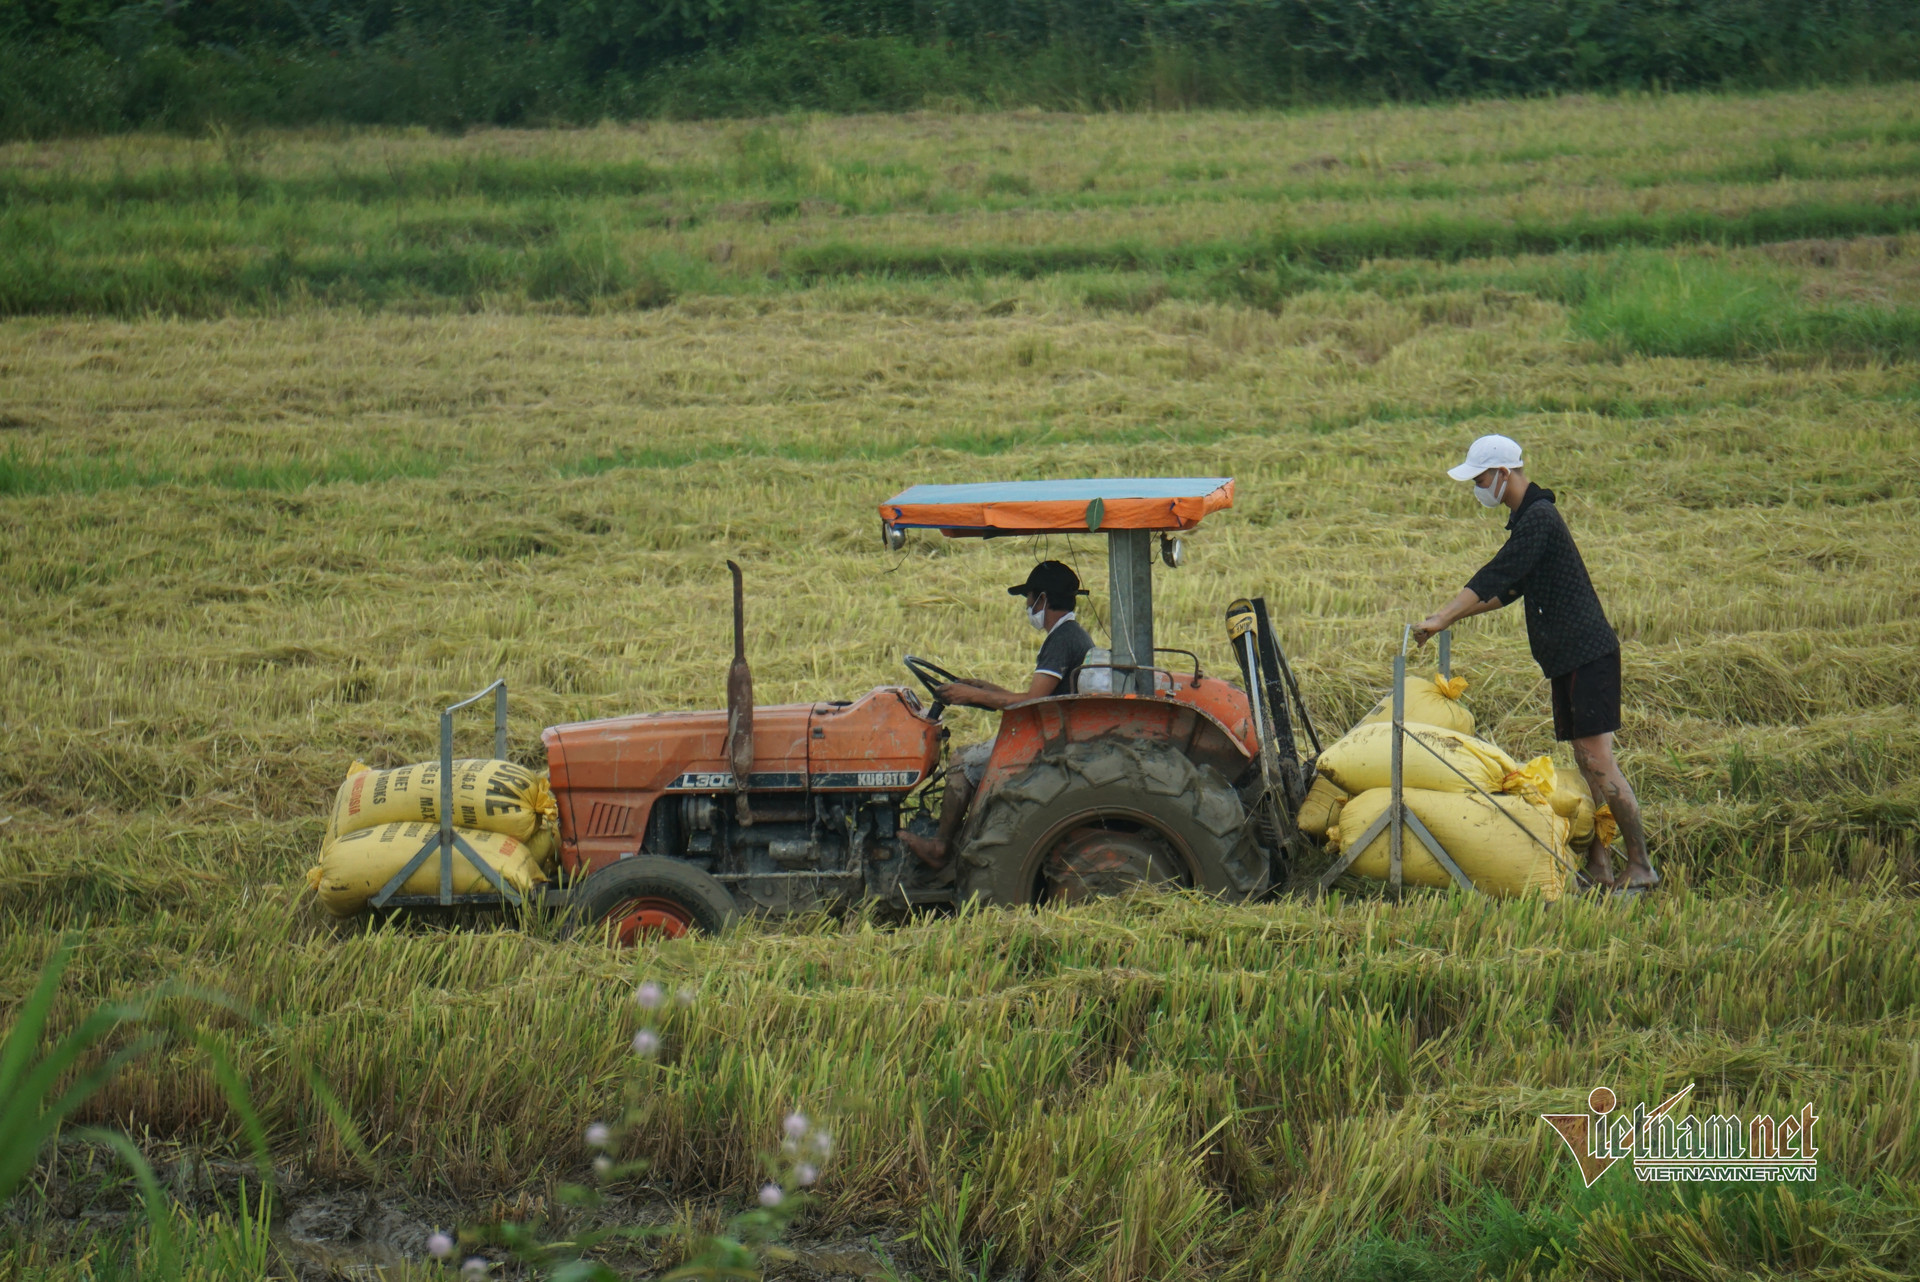 Lo bão số 5, dân Đà Nẵng khẩn trương thu hoạch lúa, cẩu tàu thuyền lên bờ